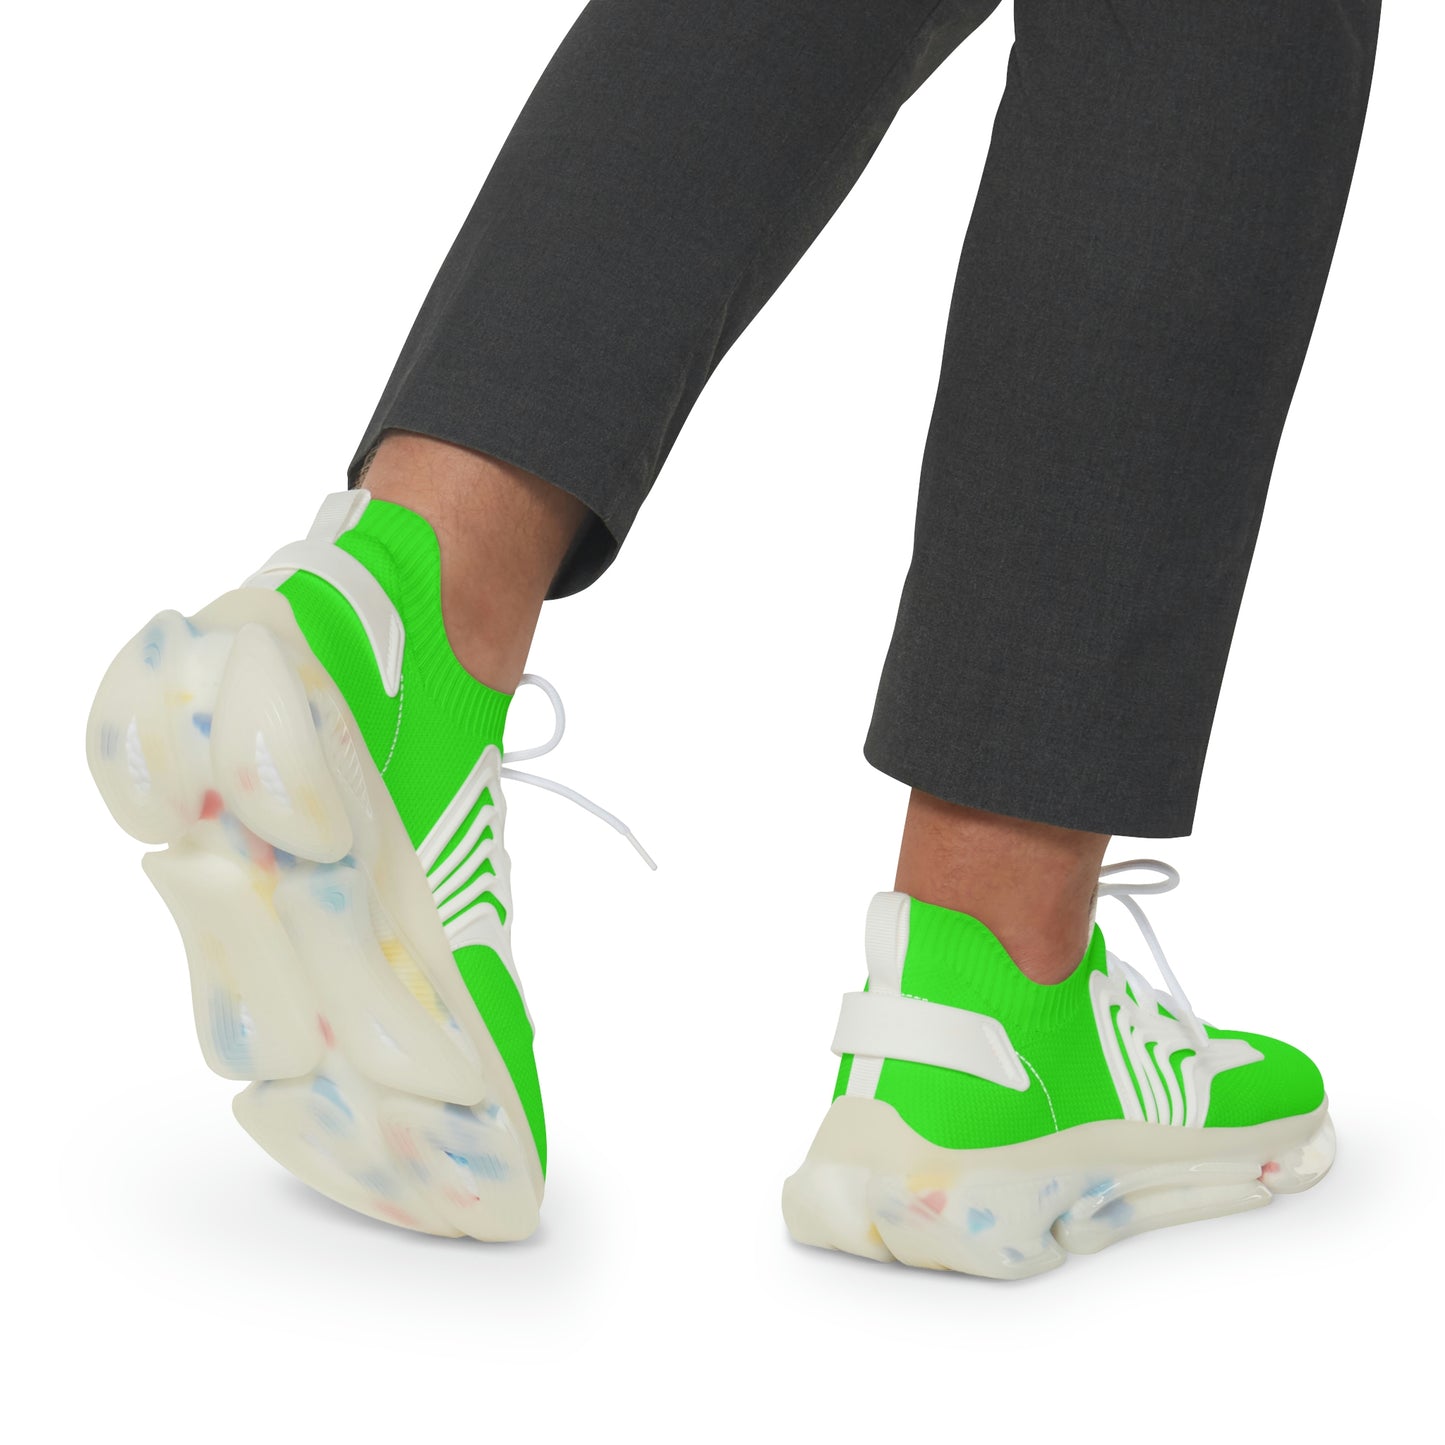 Neon Green UV Glow Men's Women's Mesh Sneakers